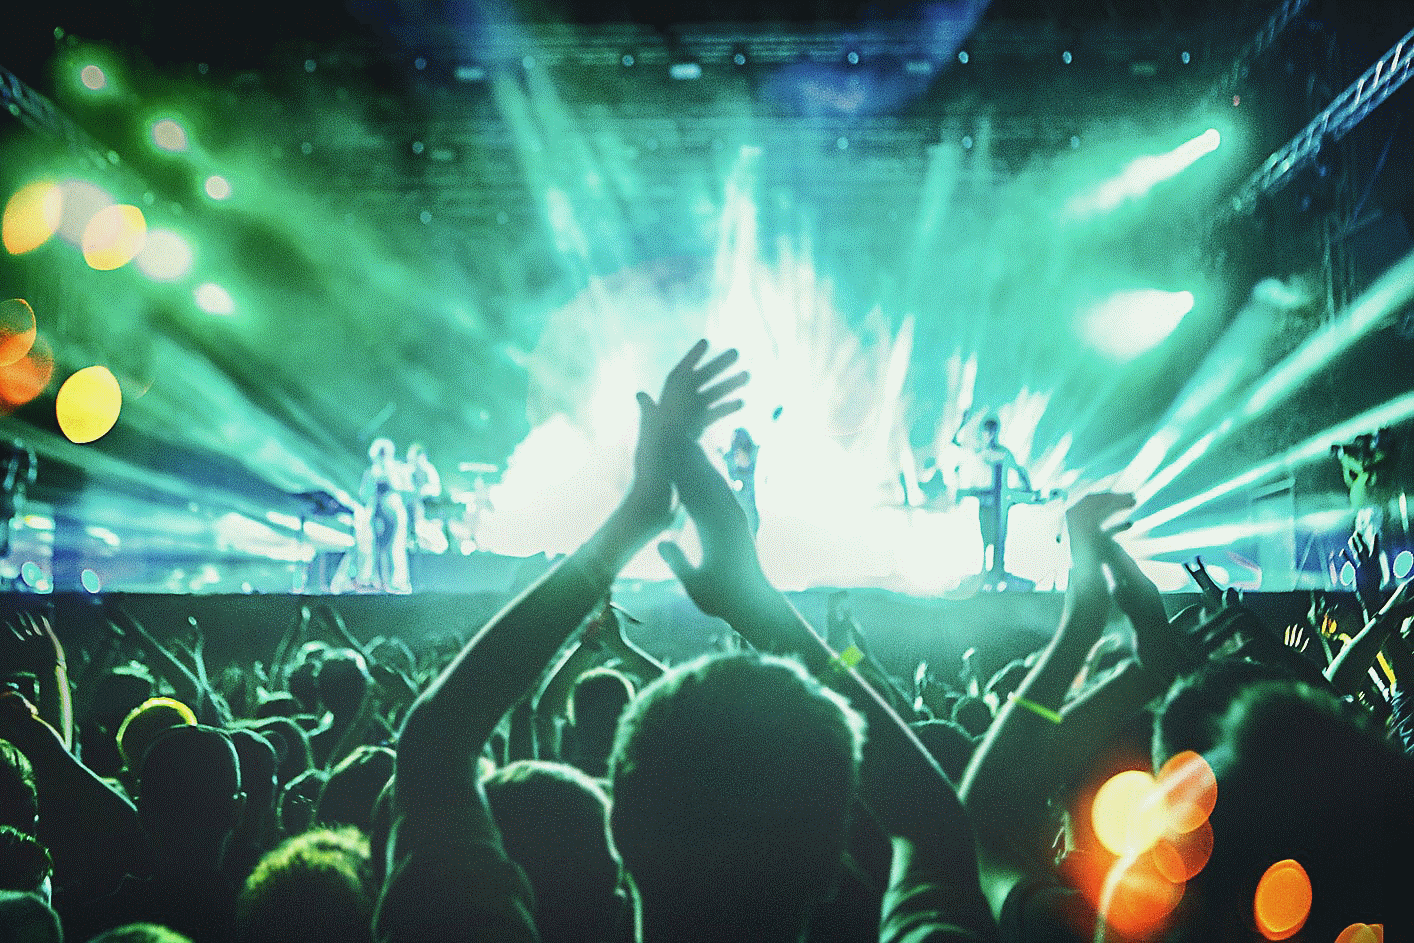 Imagen de un concierto de música en directo con muchas personas aplaudiendo e iluminación verde y azul